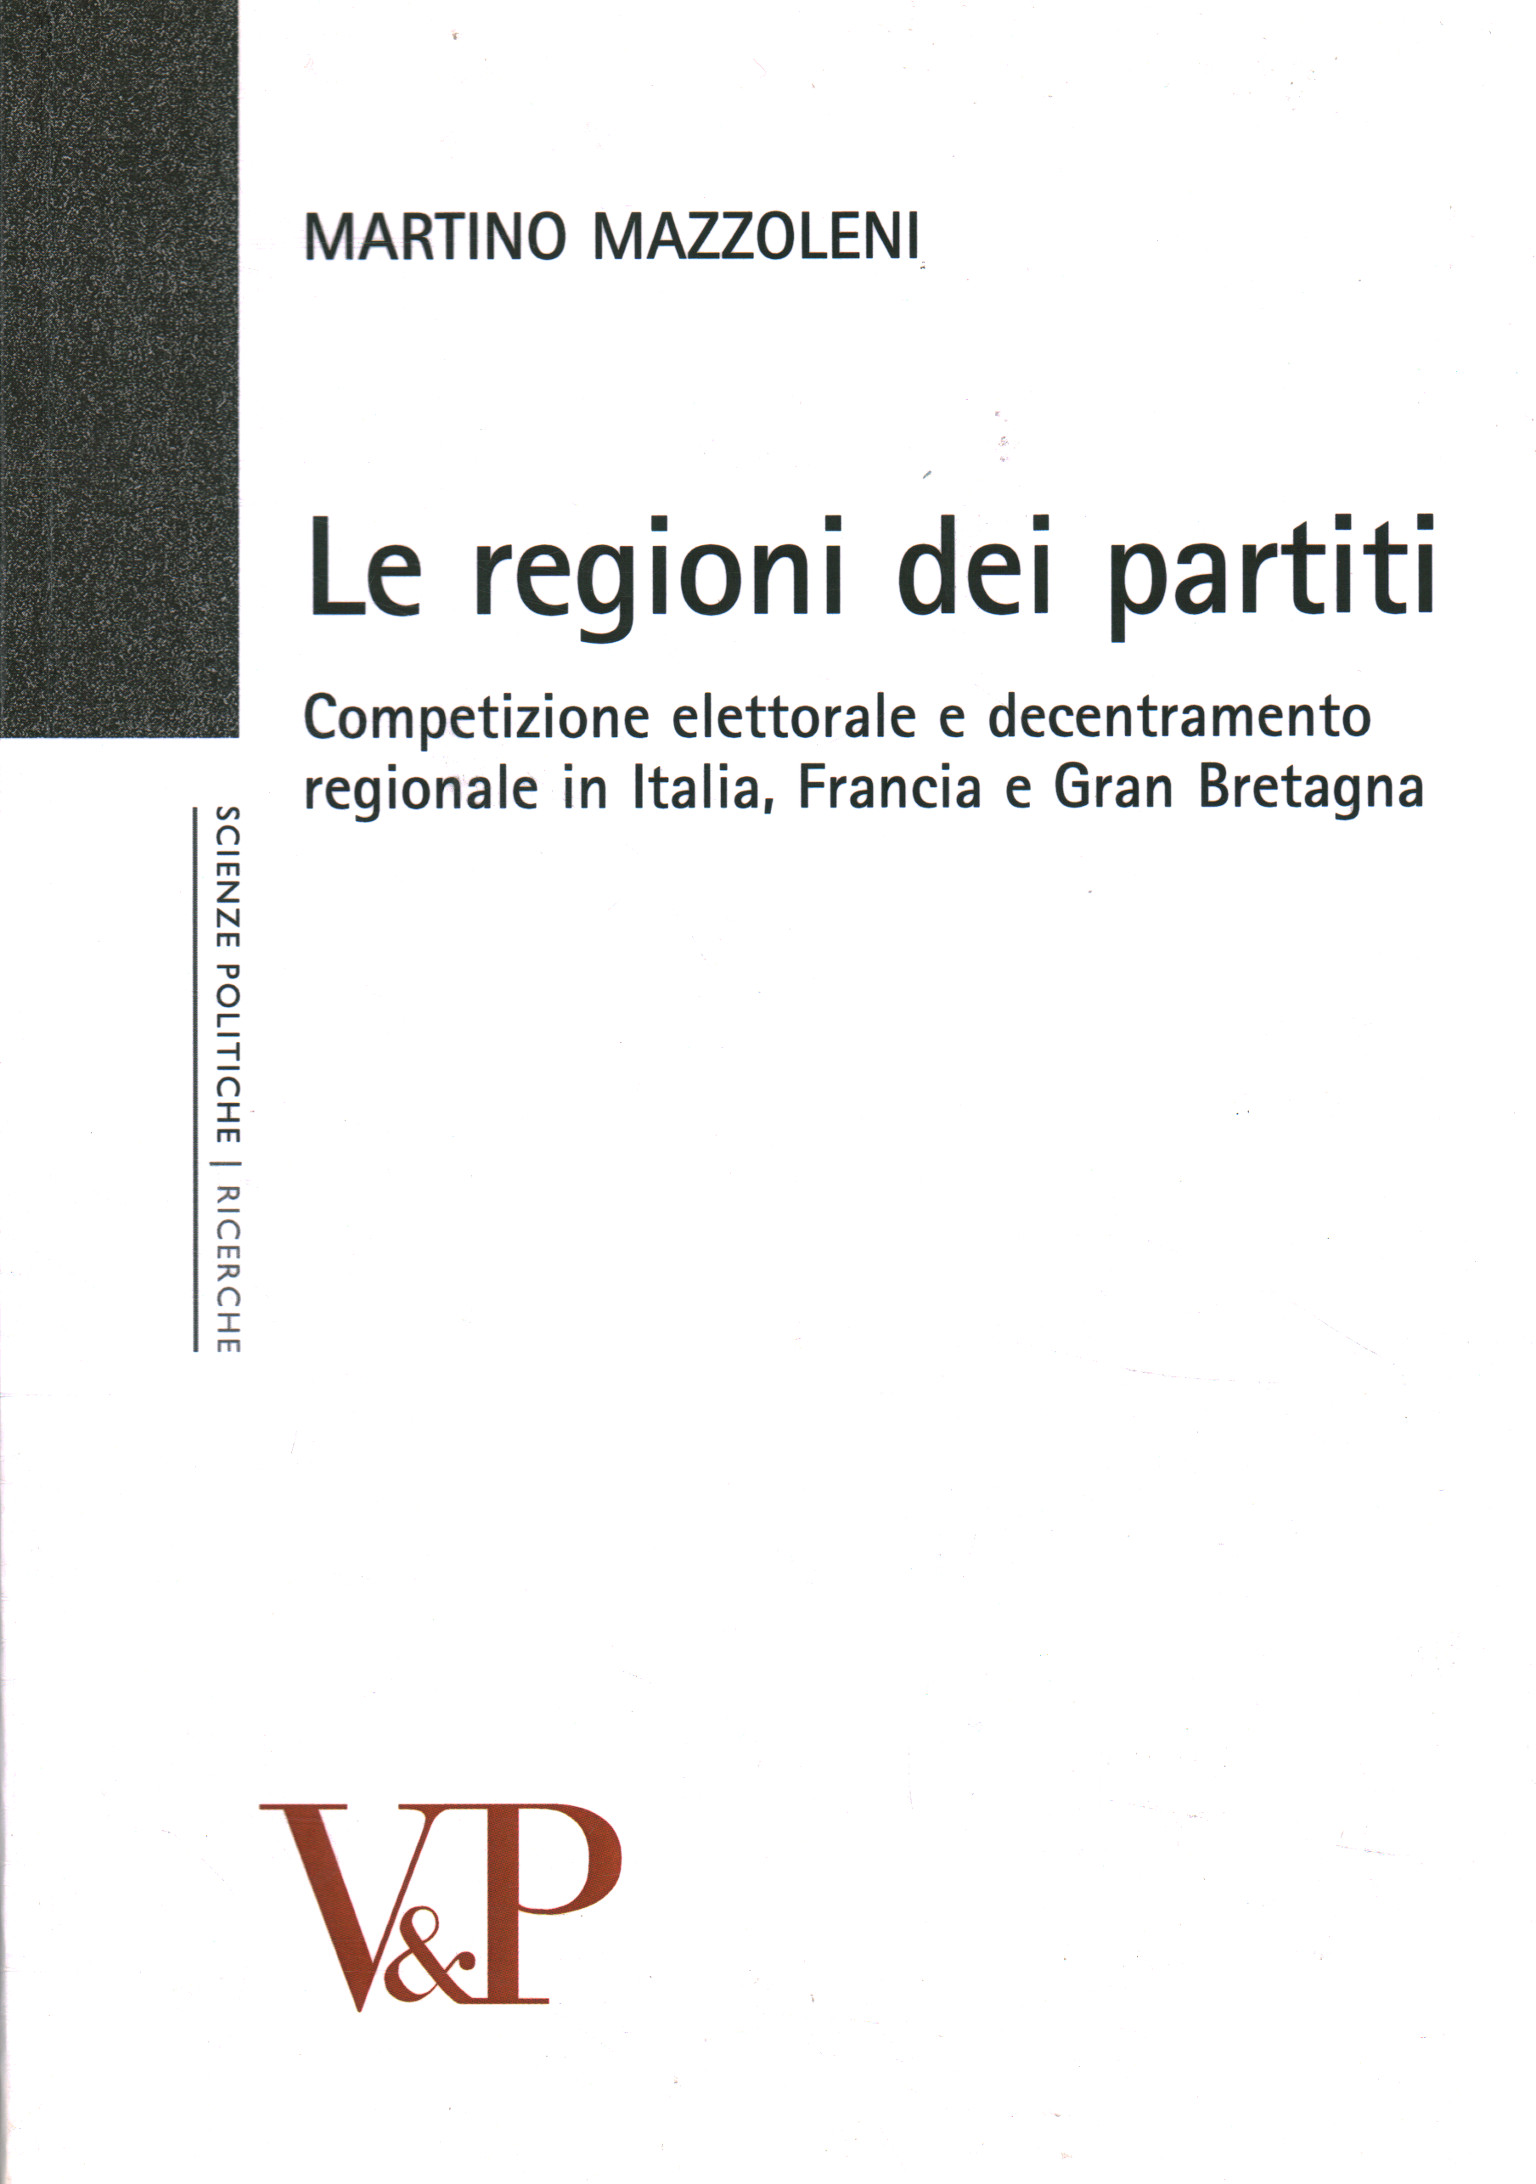 Le regioni dei partiti, Martino Mazzoleni